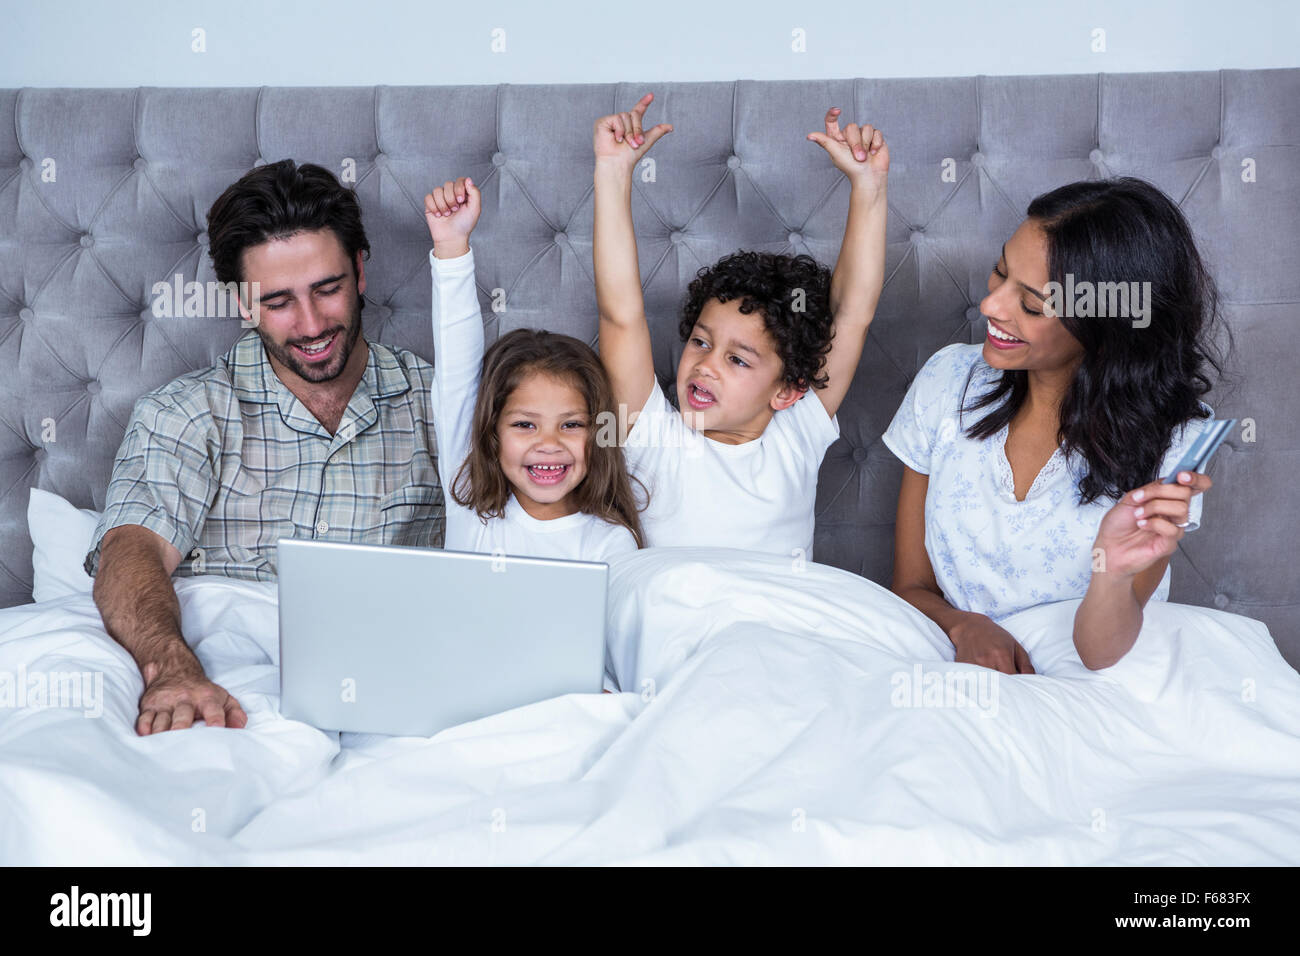 Des enfants heureux joie après l'achat en ligne Banque D'Images